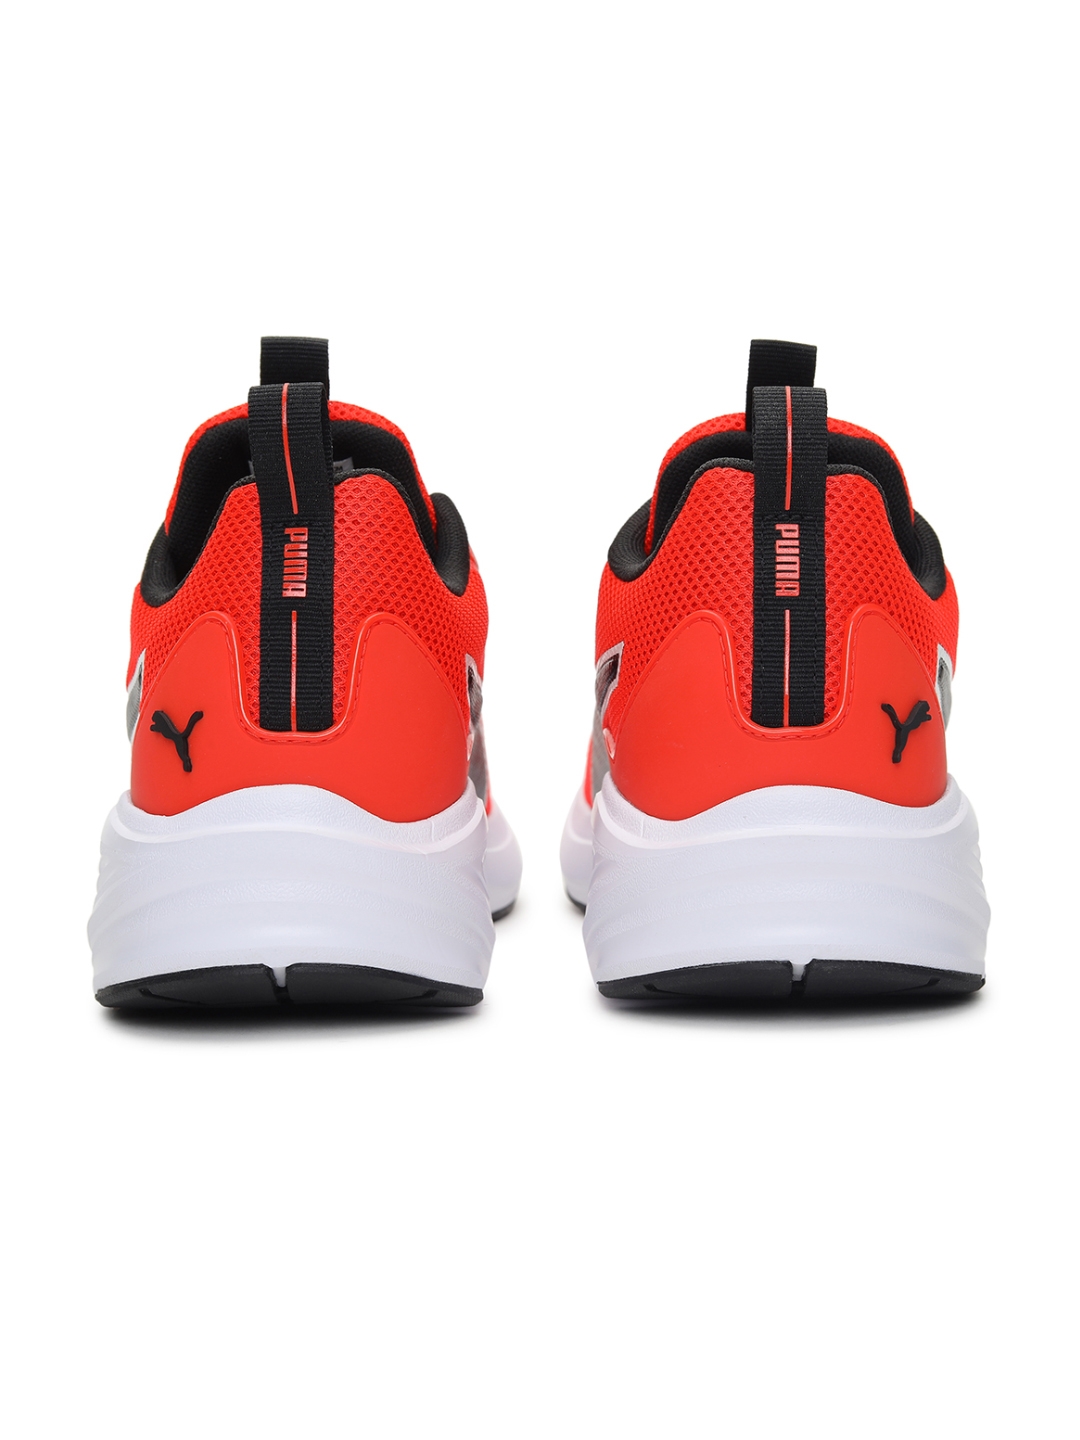 Puma | Fire Runner Profoam Unisex Running Shoes 2